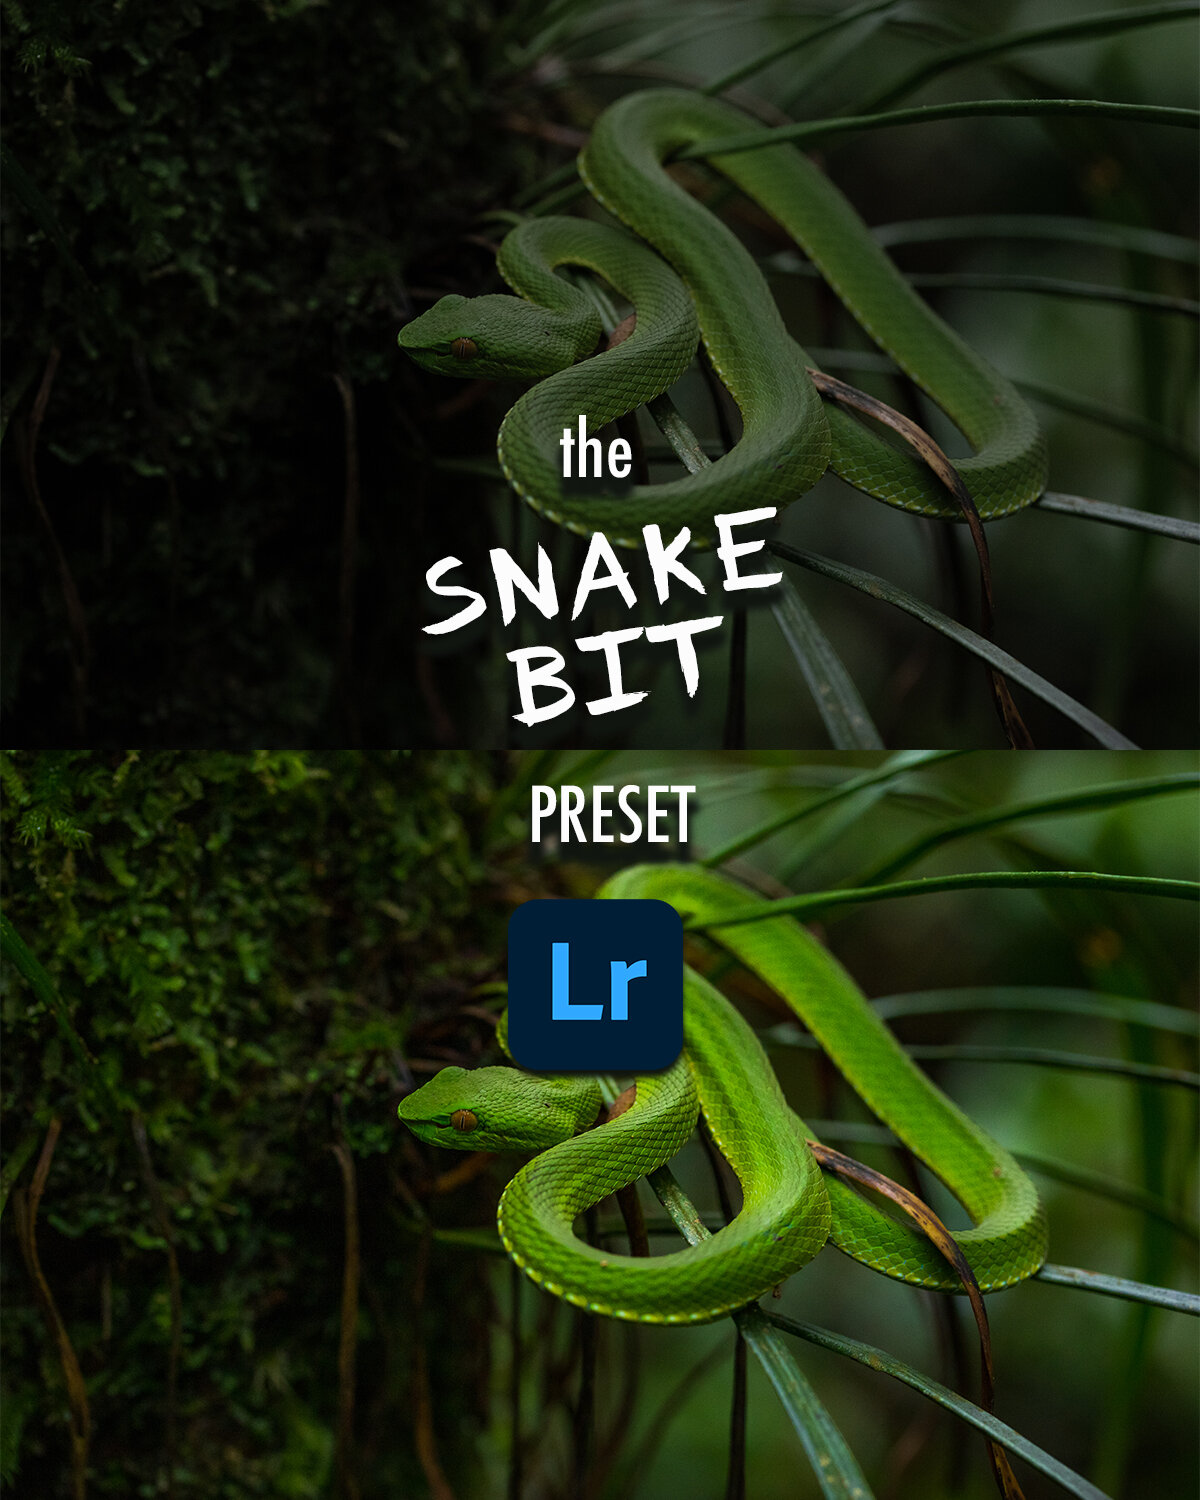 the snake bit.jpg